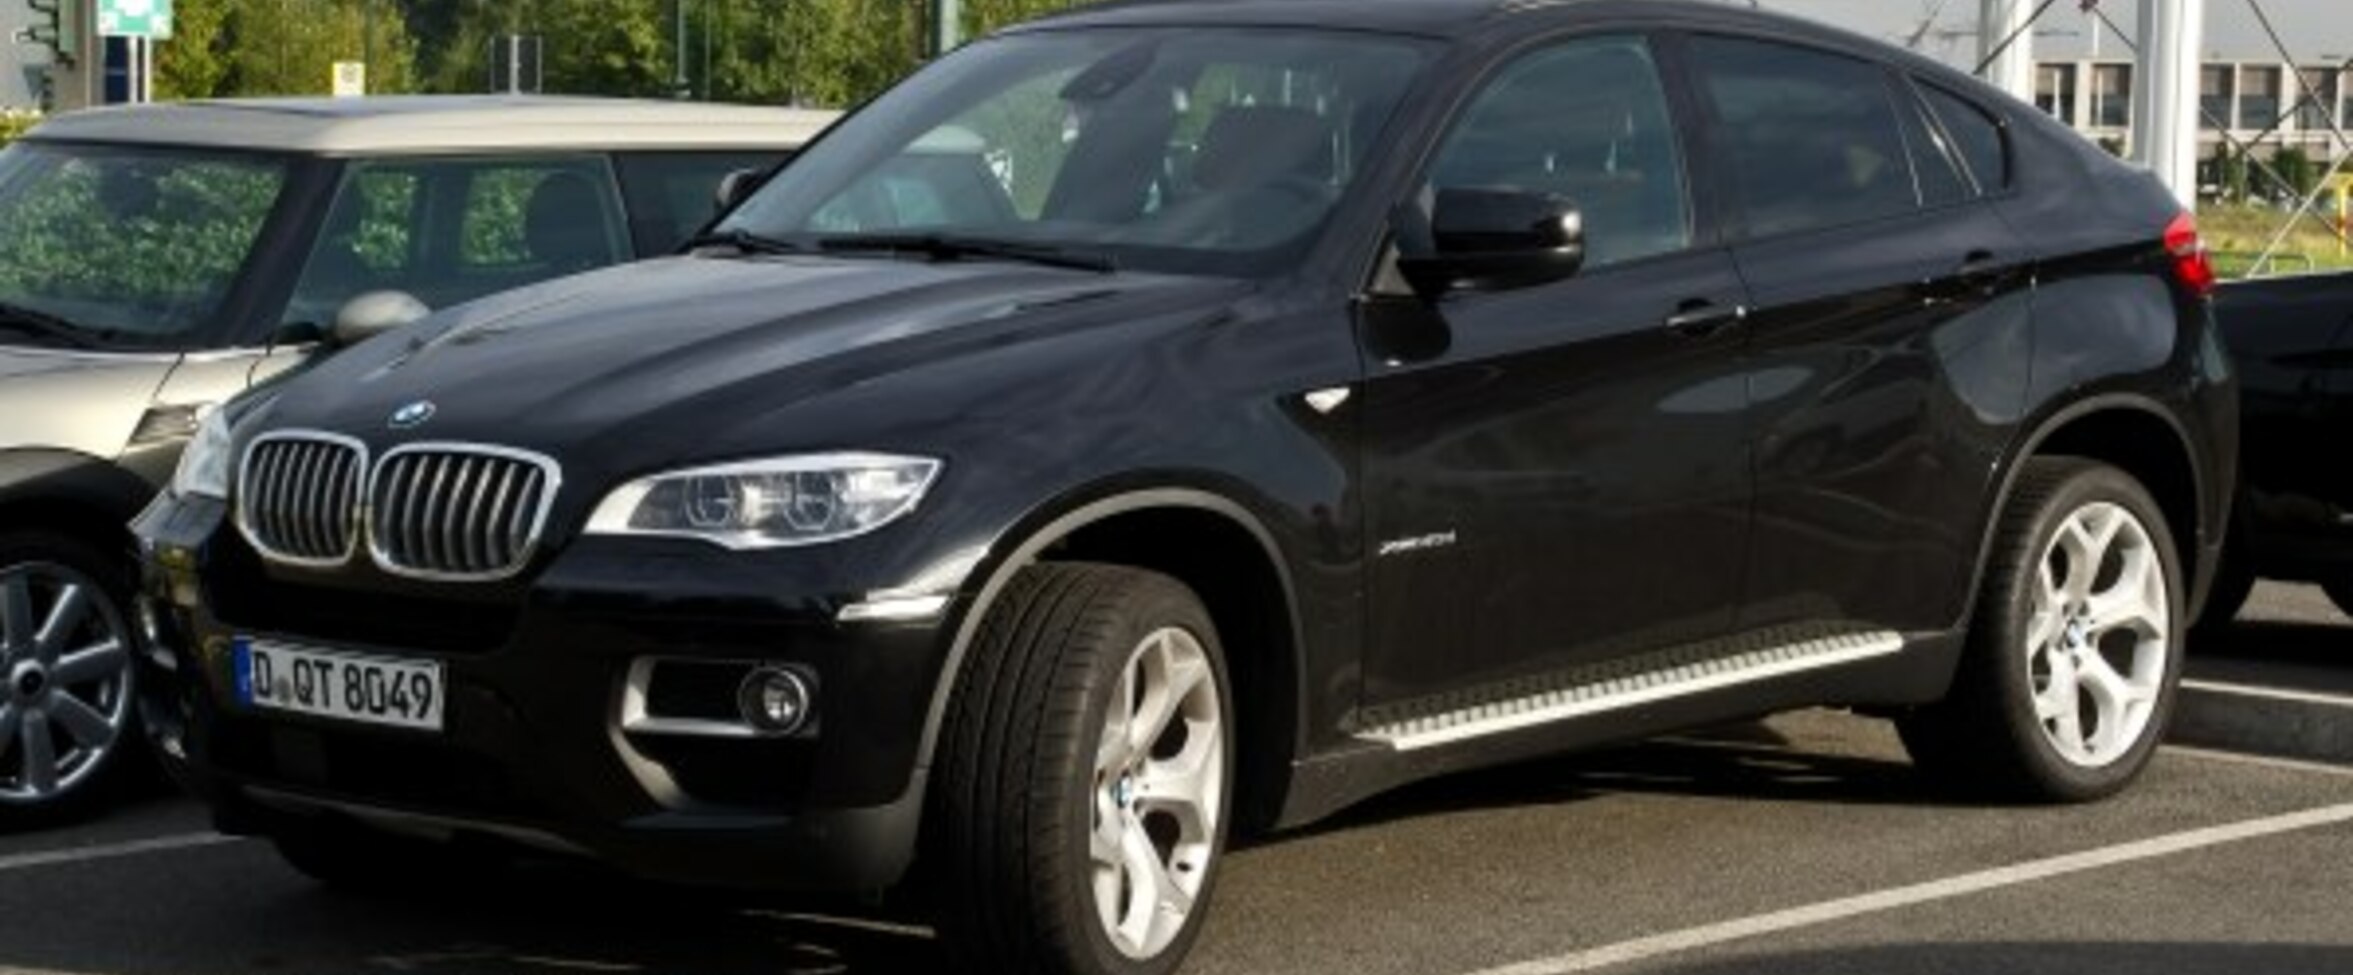 BMW X6 (E71 facelift 2012) M50d (381 Hp) Automatic 2012, 2013, 2014 